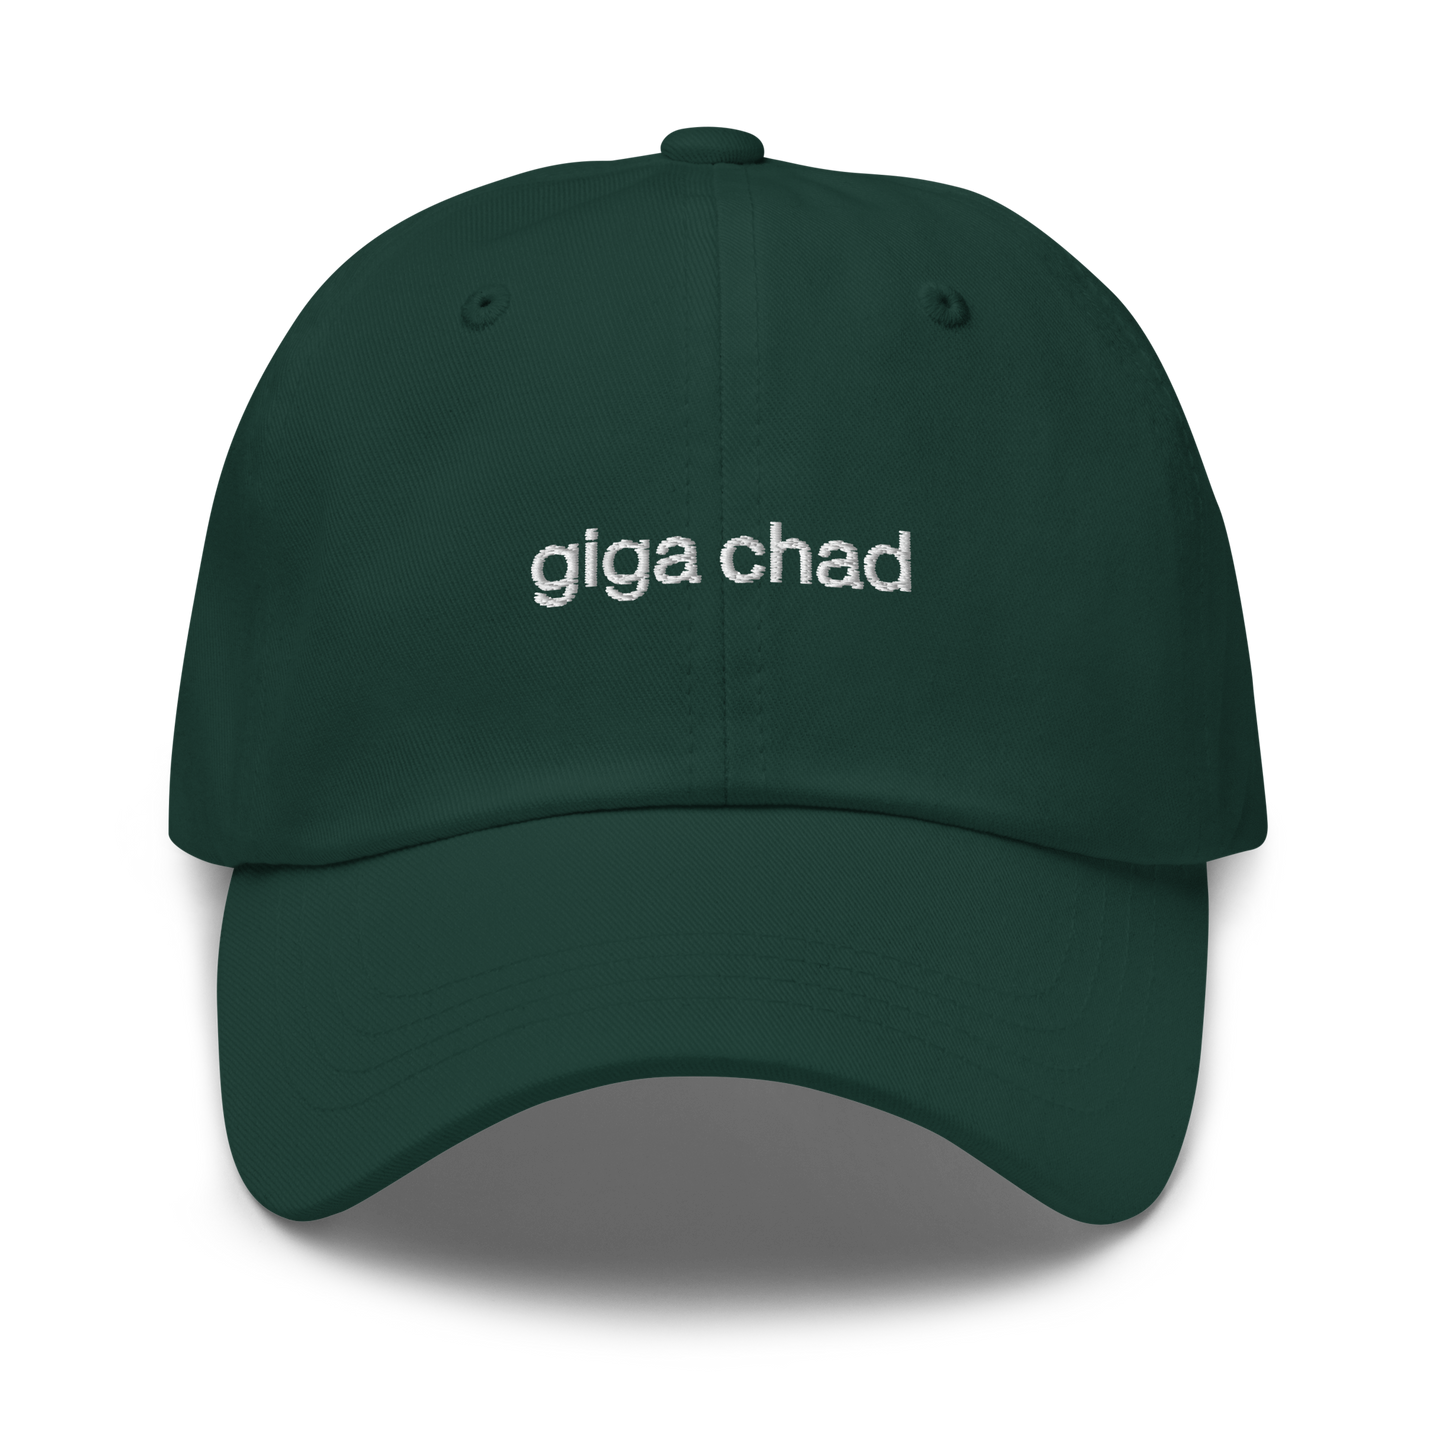 giga chad hat